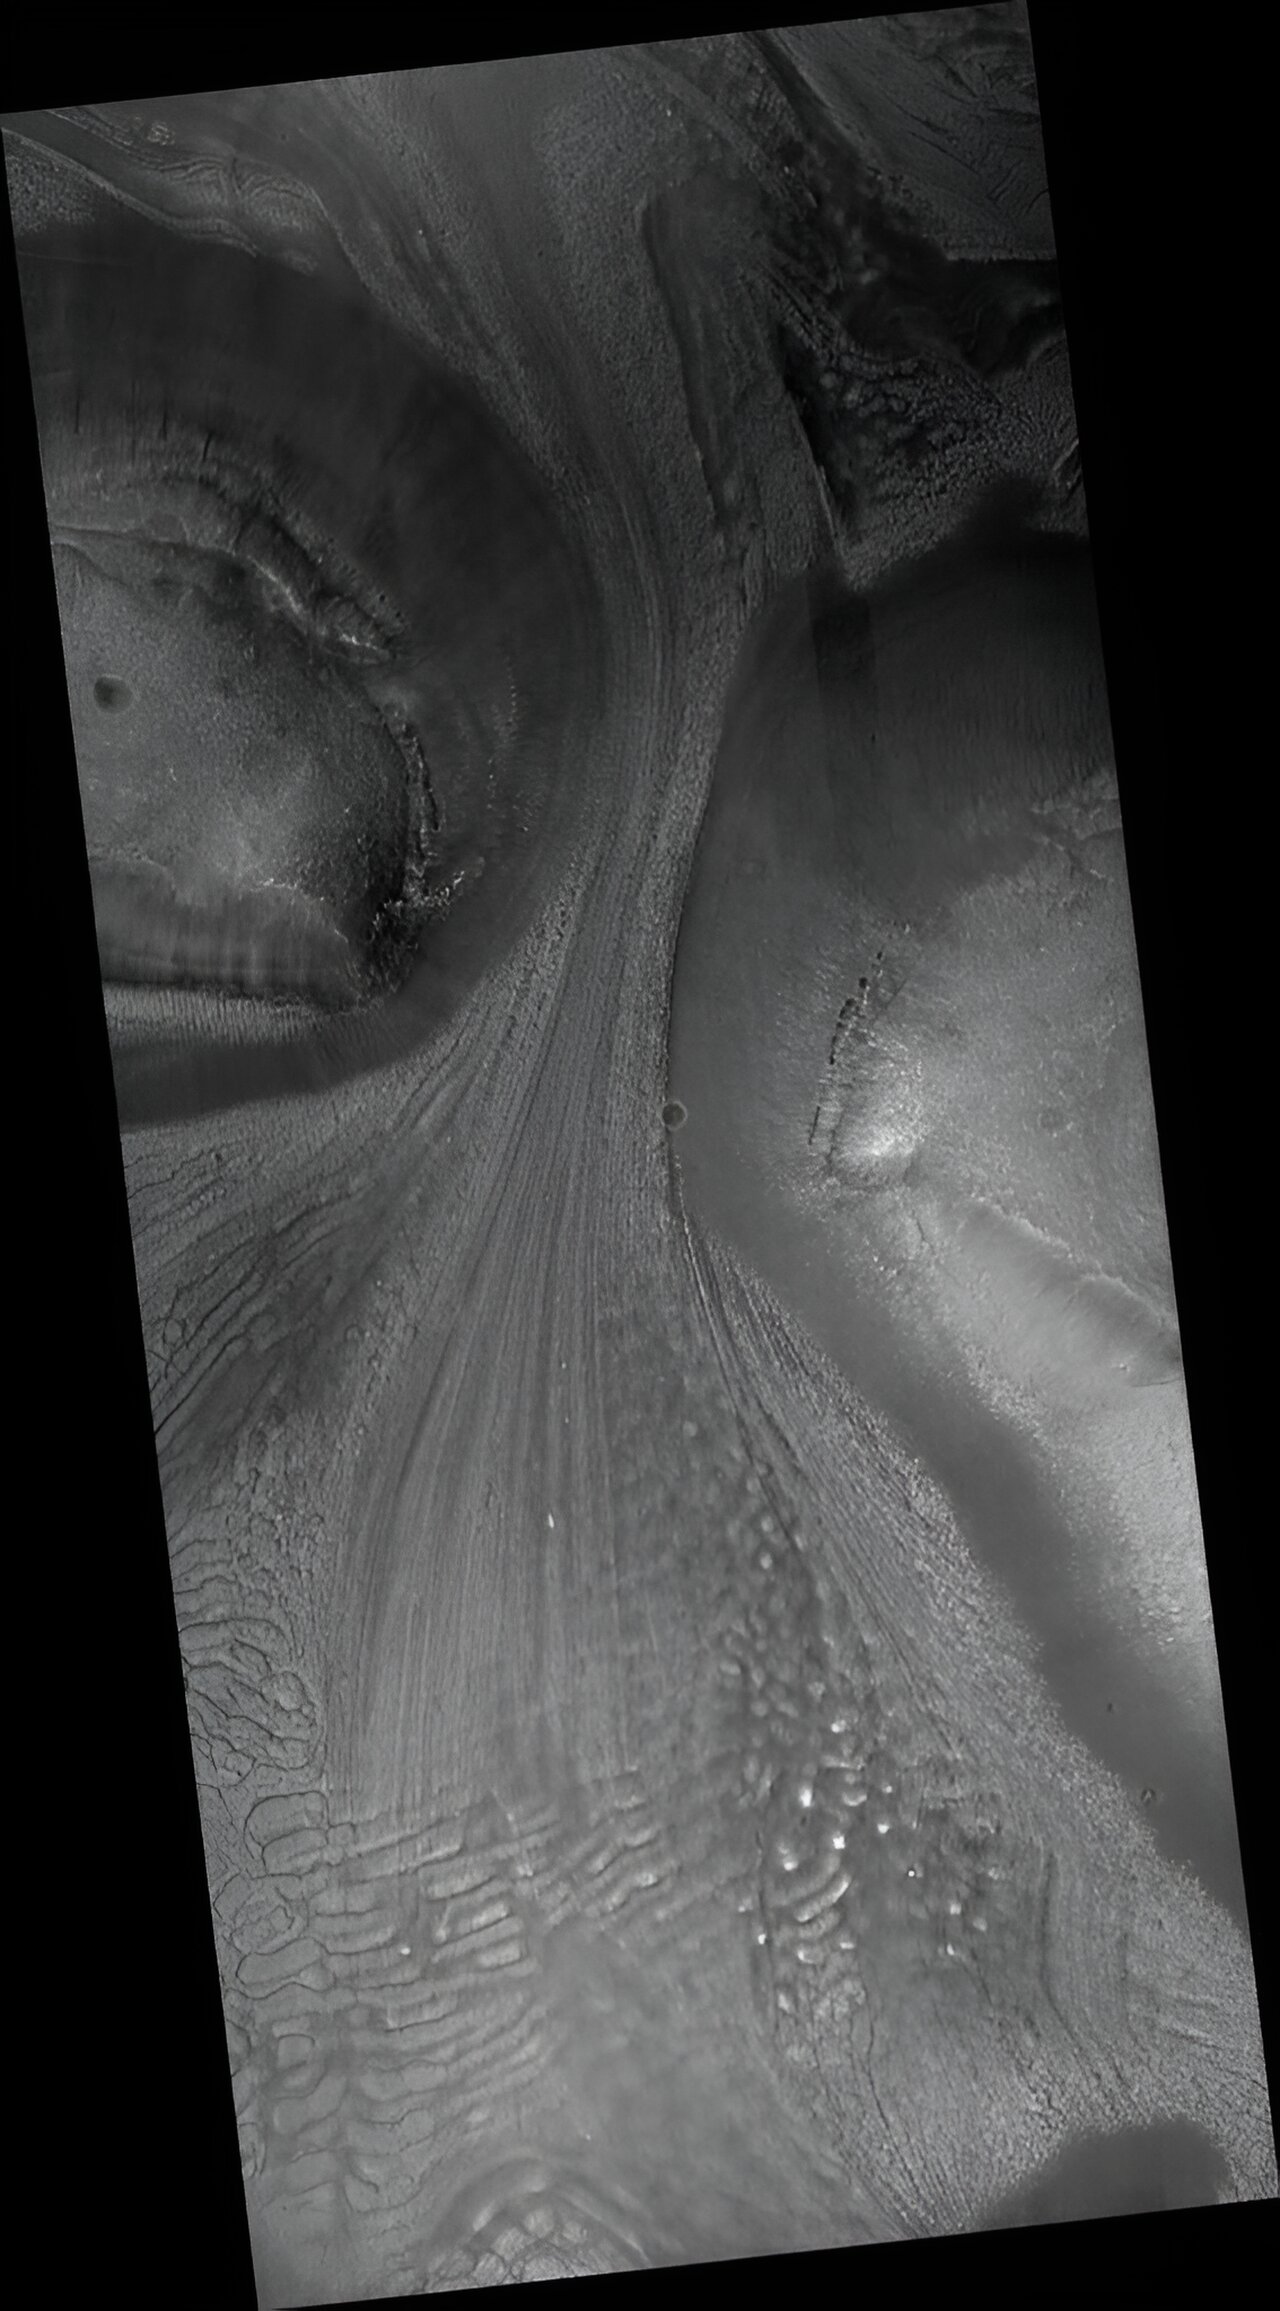 Fotografija u punoj veličini koju je snimio HiRISE ukazuje na neravni teren za koji se smatra da je uzrokovan povlačenjem ledenjaka na Marsu. Zasluge: NASA/JPL-Caltech/Sveučilište Arizona